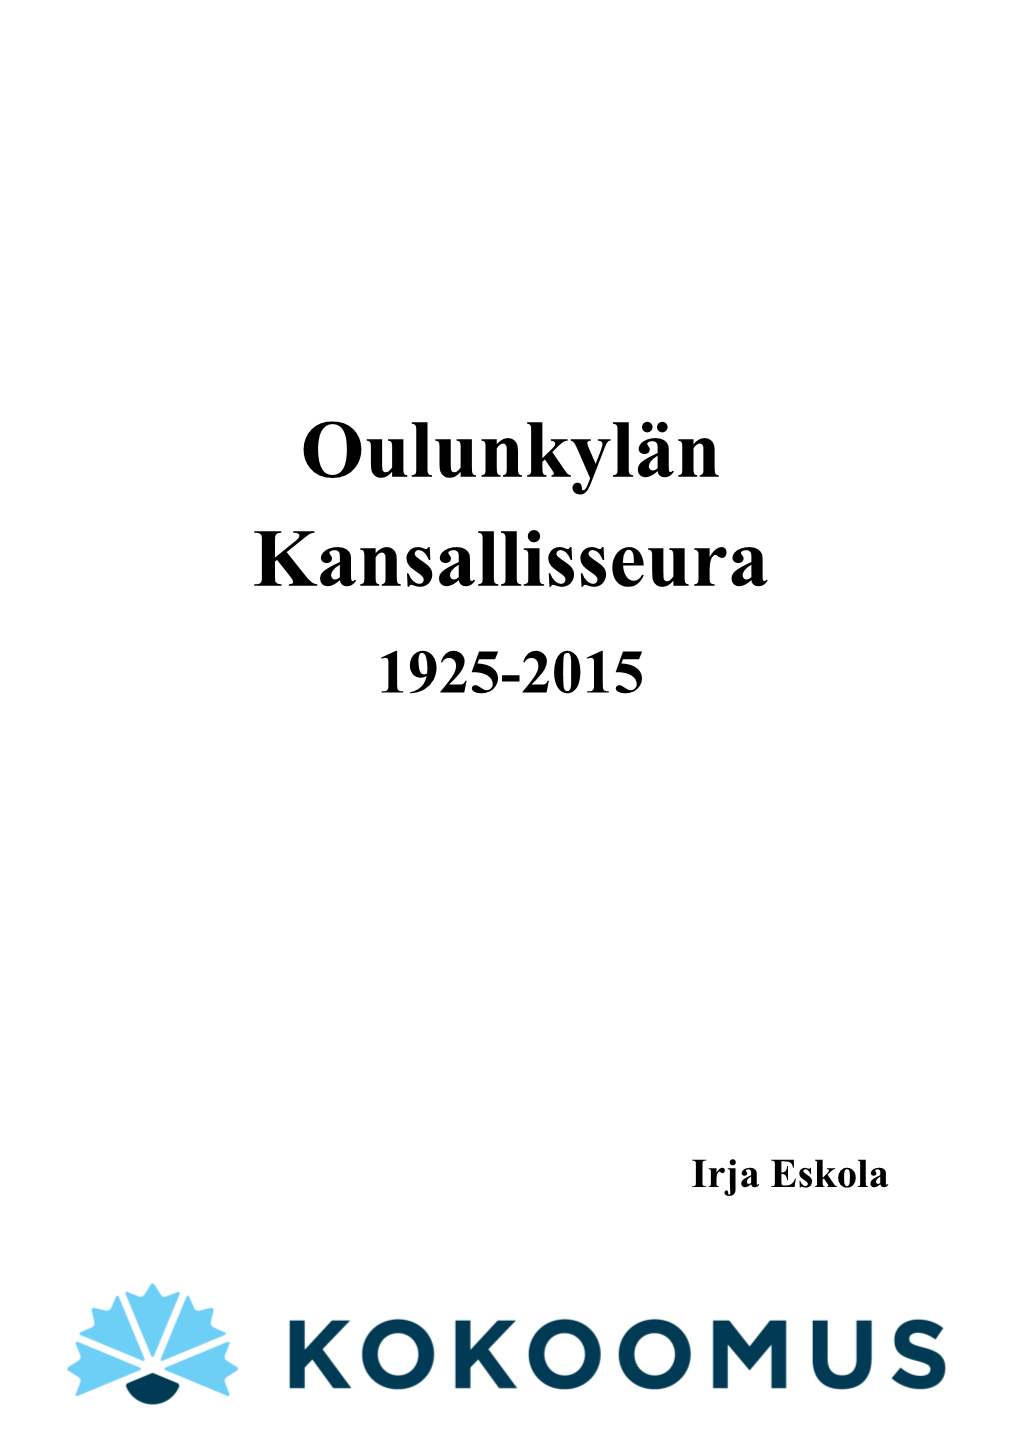 Oulunkylän Kansallisseuran Historiikki 90V